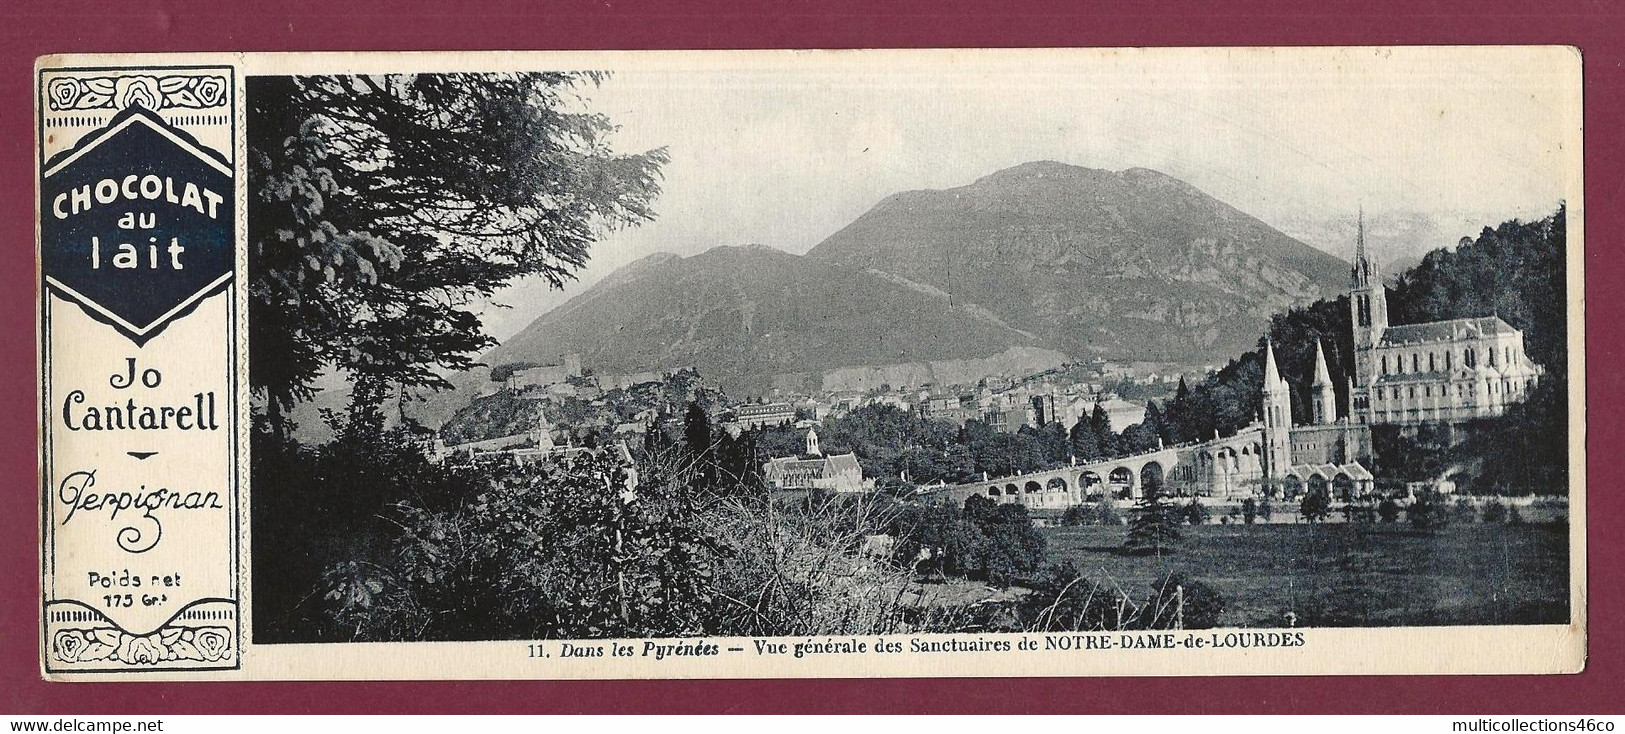 170222A - PUBLICITE CHOCOLAT AU LAIT JO CANTARELL PERPIGNAN - N°11 Pyrénées Sanctuaire NOTRE DAME DE LOURDES - Chocolate